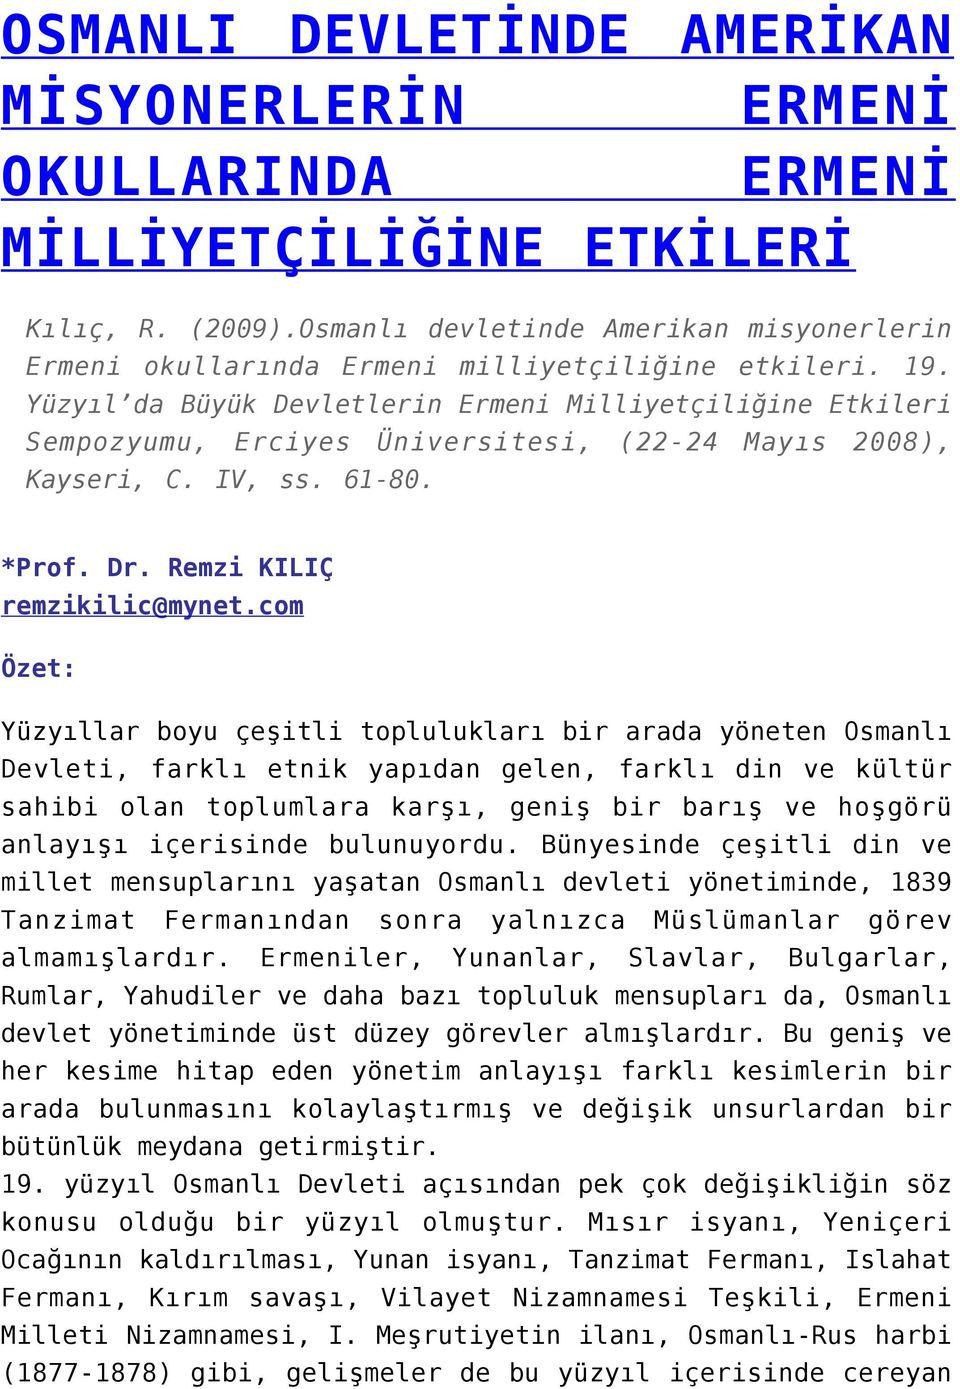 Yüzyıl da Büyük Devletlerin Ermeni Milliyetçiliğine Etkileri Sempozyumu, Erciyes Üniversitesi, (22-24 Mayıs 2008), Kayseri, C. IV, ss. 61-80. *Prof. Dr. Remzi KILIÇ remzikilic@mynet.